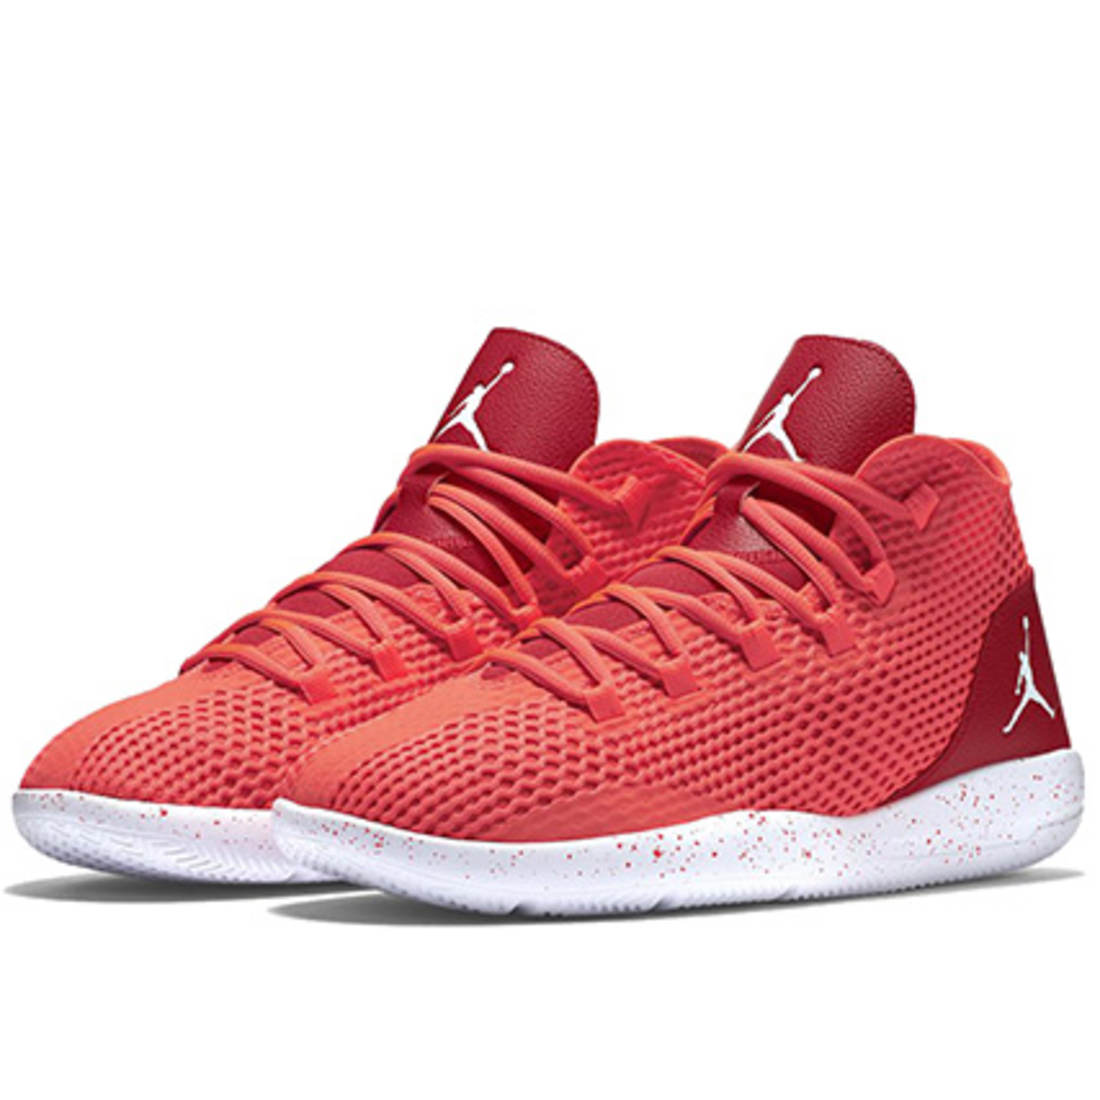 Jordan - Baskets Air Jordan Reveal Rouge - LaBoutiqueOfficielle.com